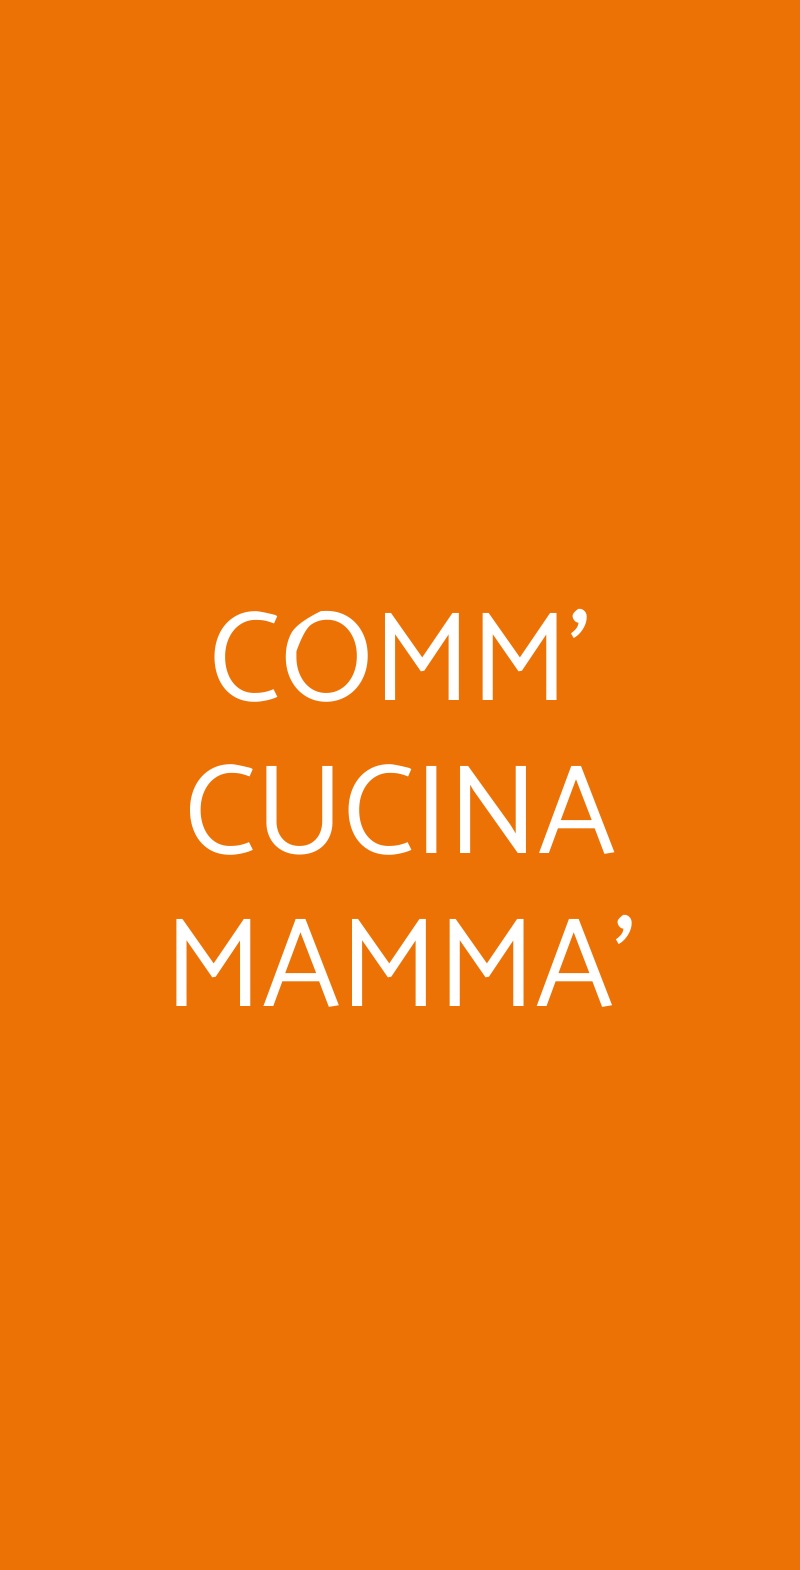 COMM' CUCINA MAMMA' Napoli menù 1 pagina